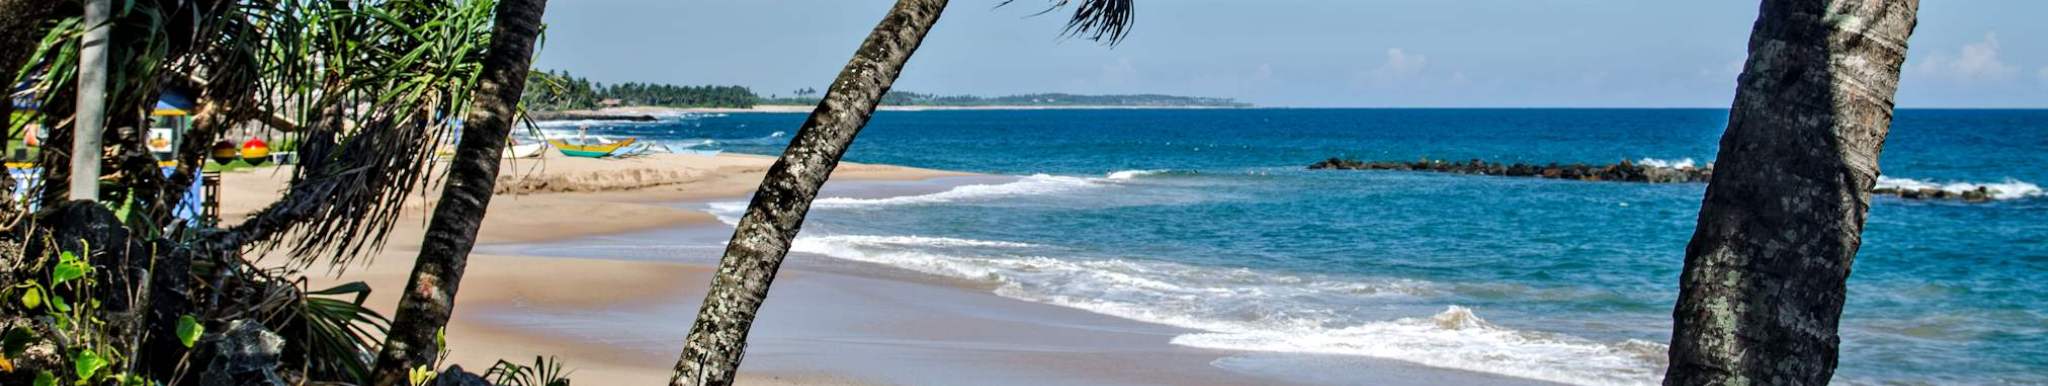 Tangalle Sri Lanka Beach